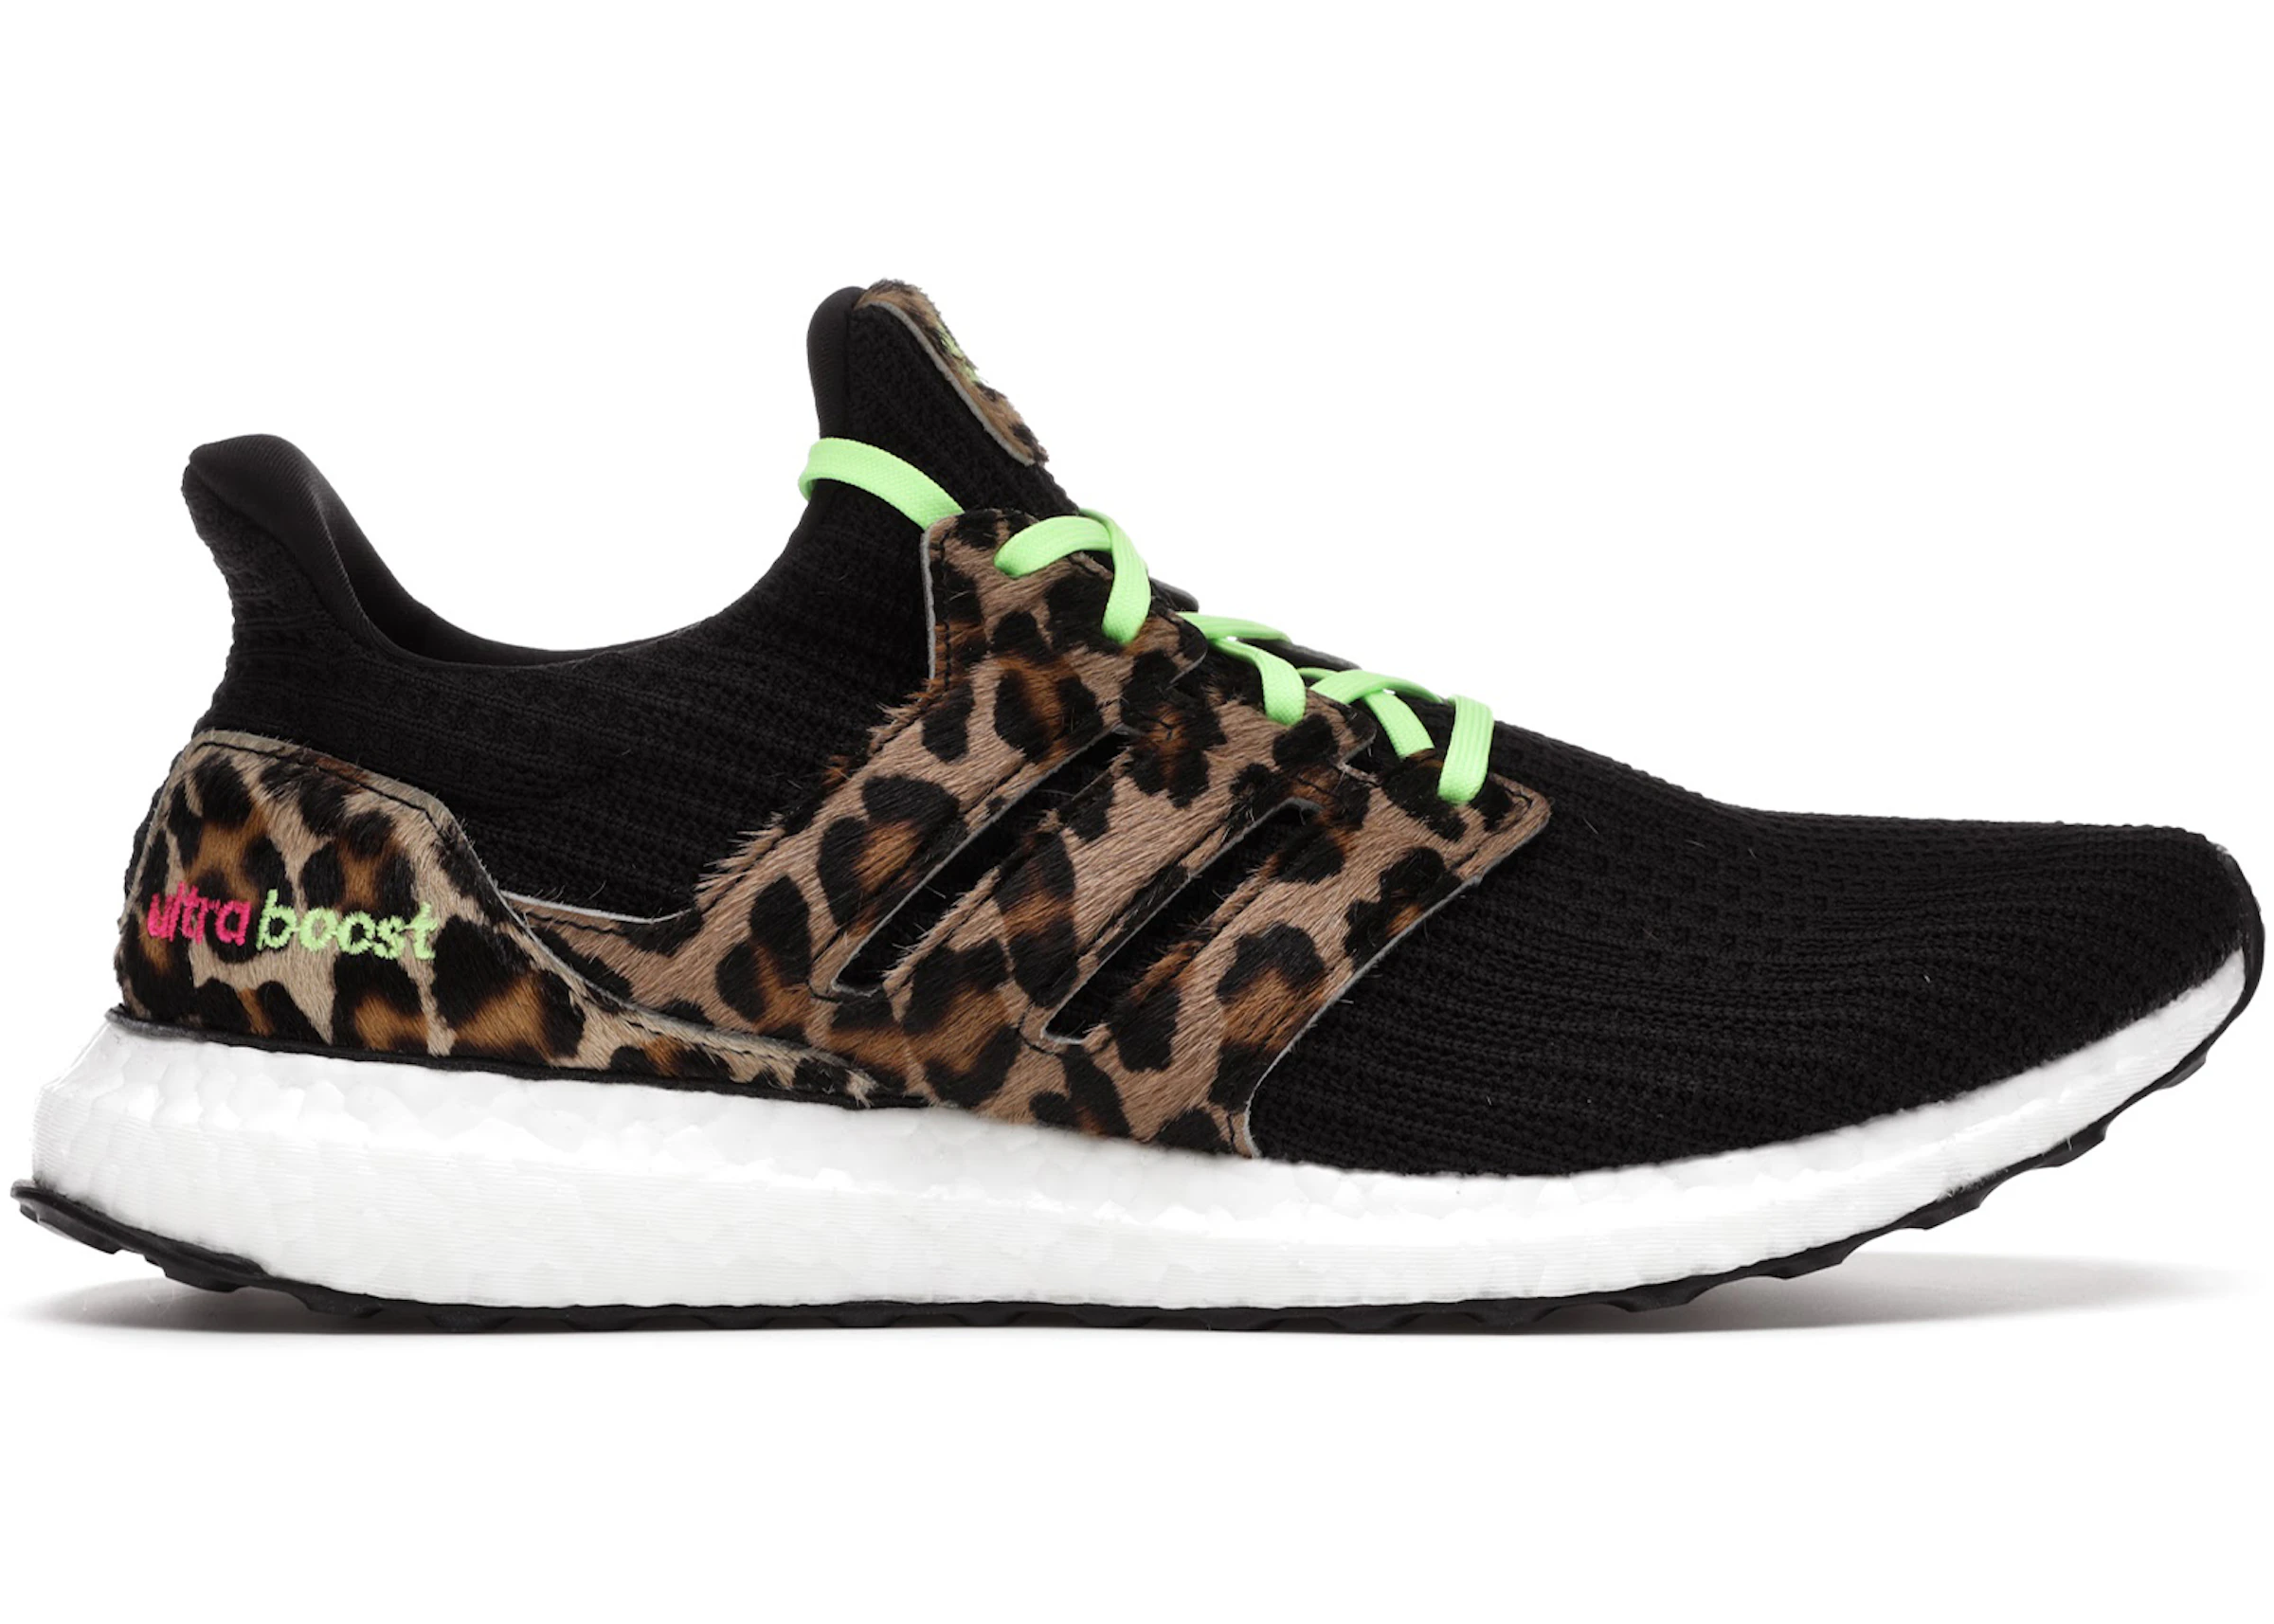 Ultraboost DNA Leopard Shoes | vlr.eng.br